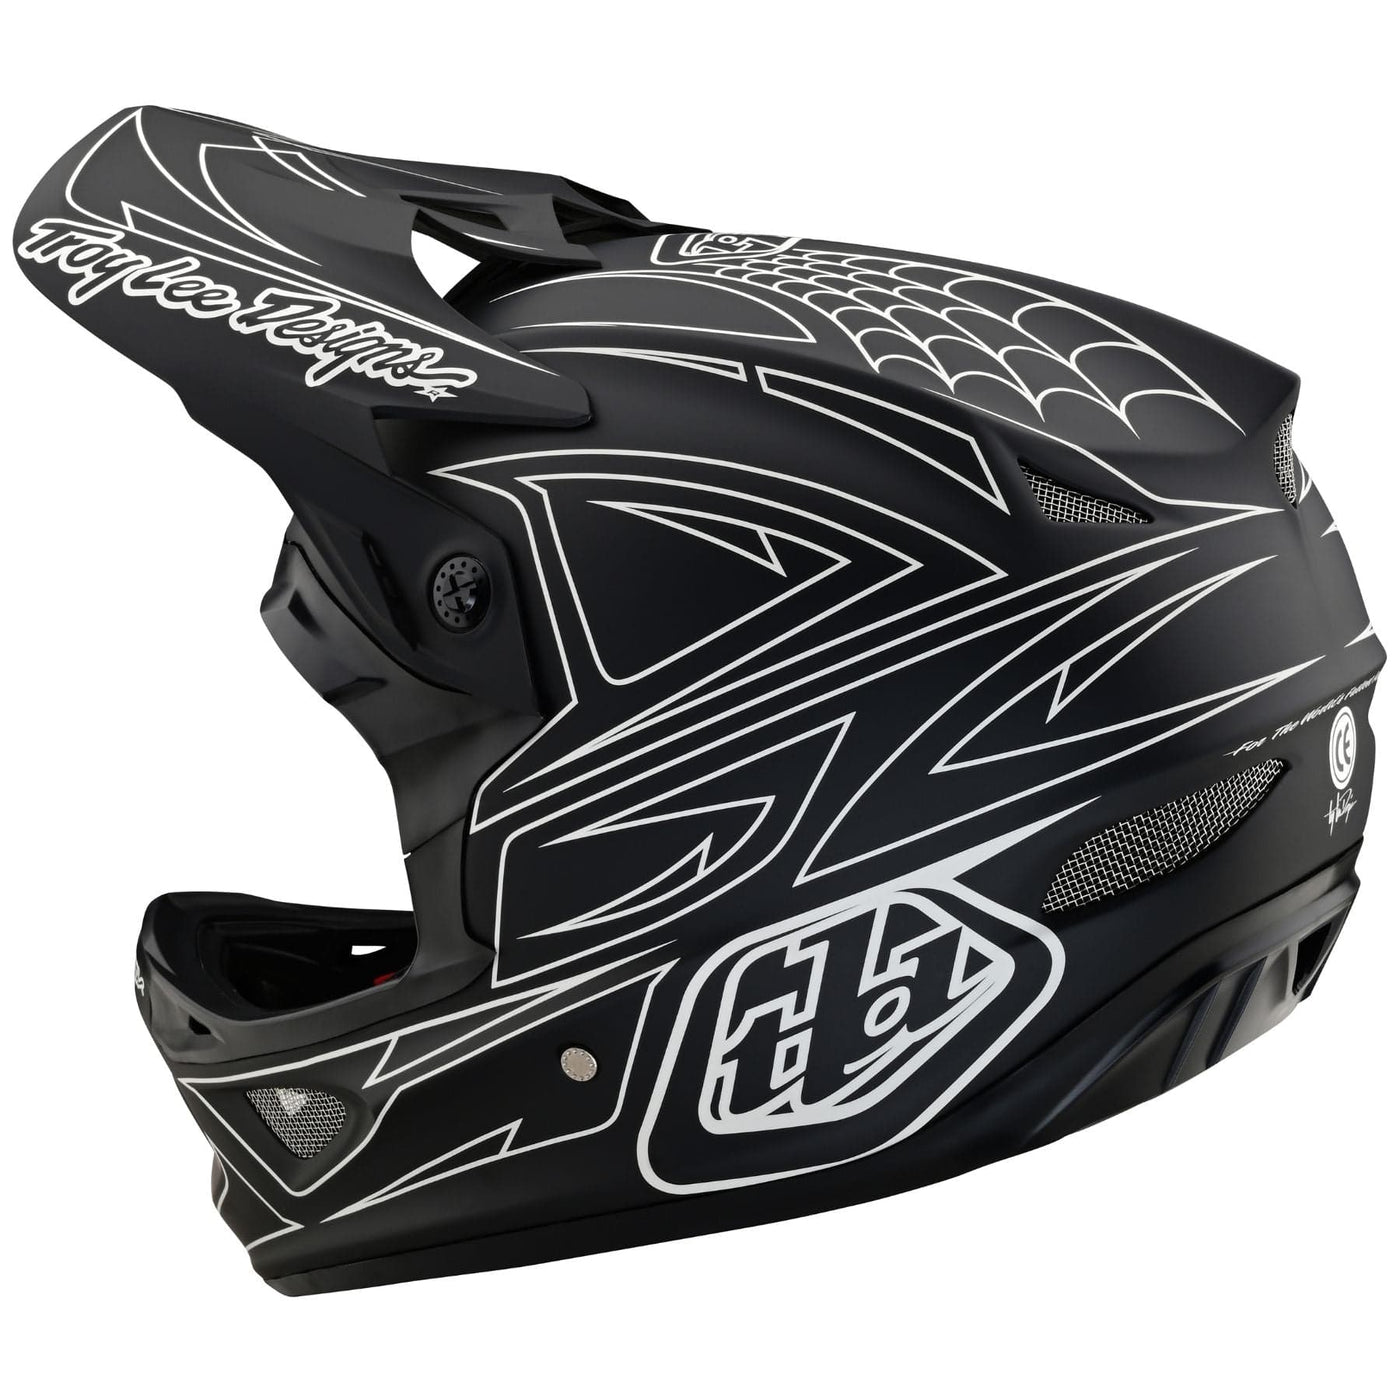 Full-face BMX race helmet - D3 Fiberlite